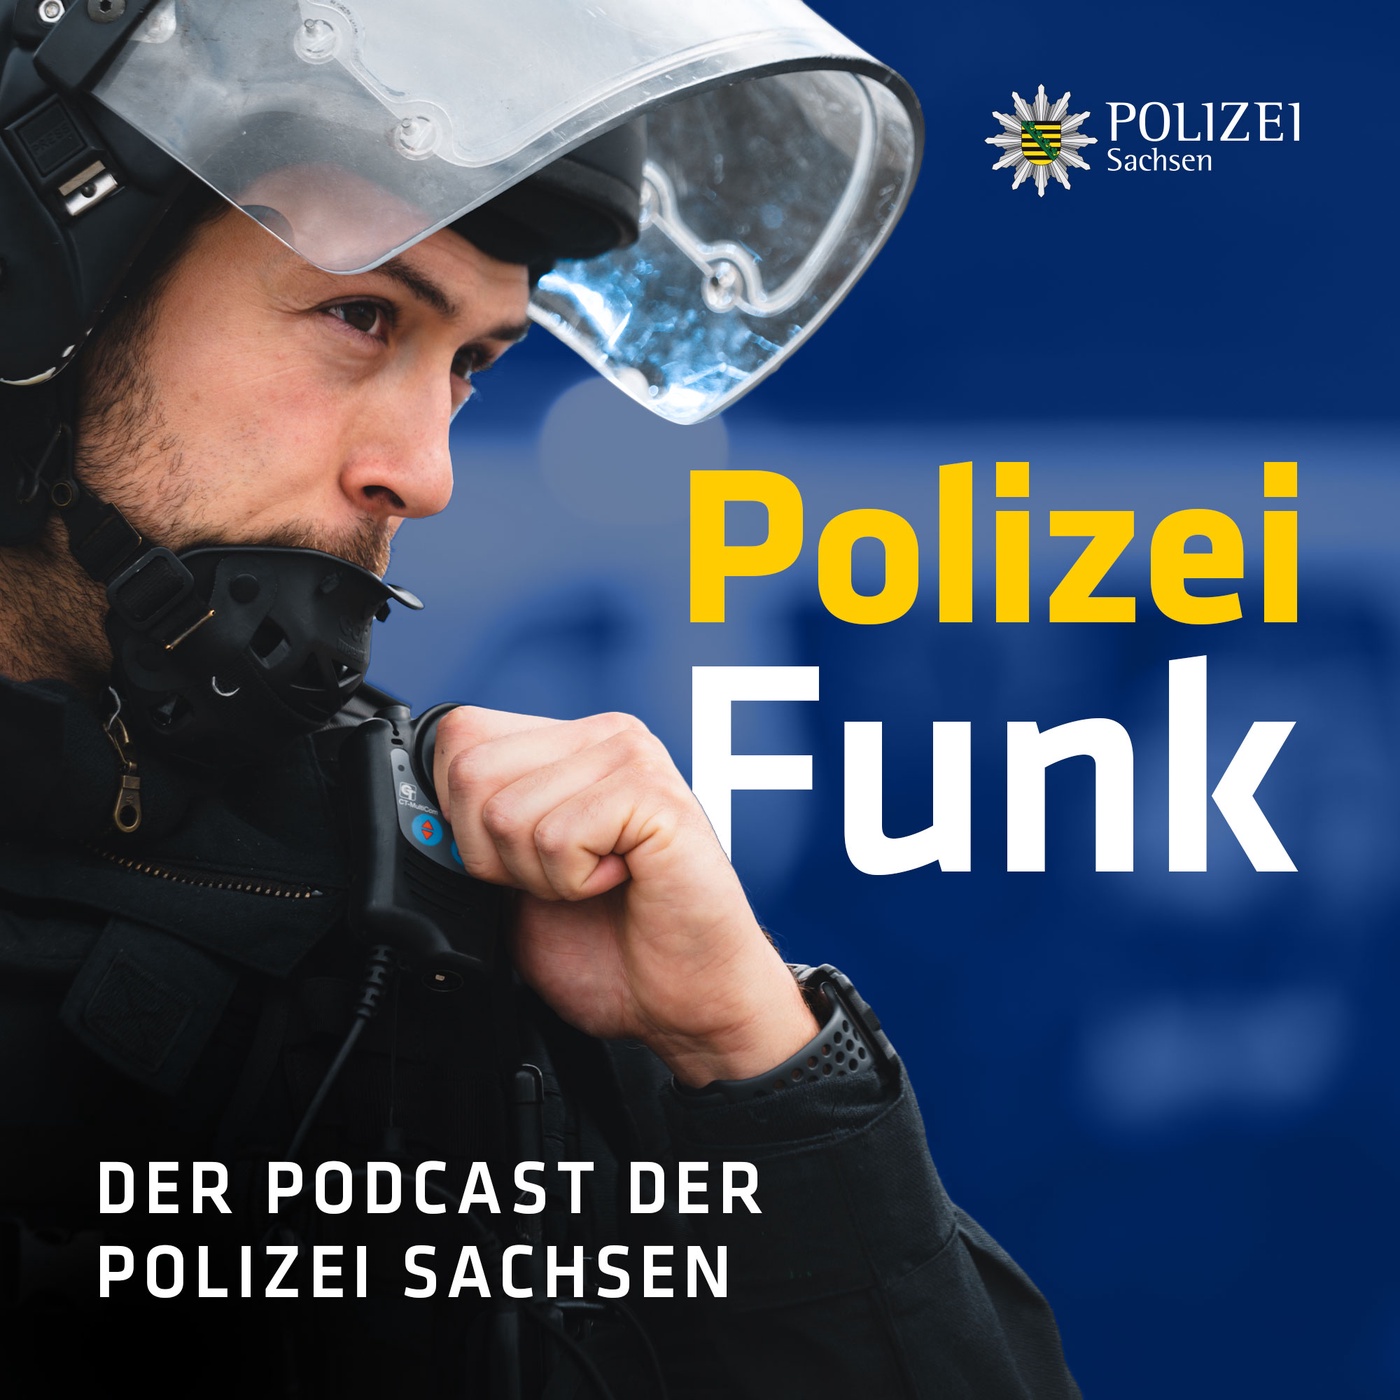 PolizeiFunk – Der Podcast der Polizei Sachsen